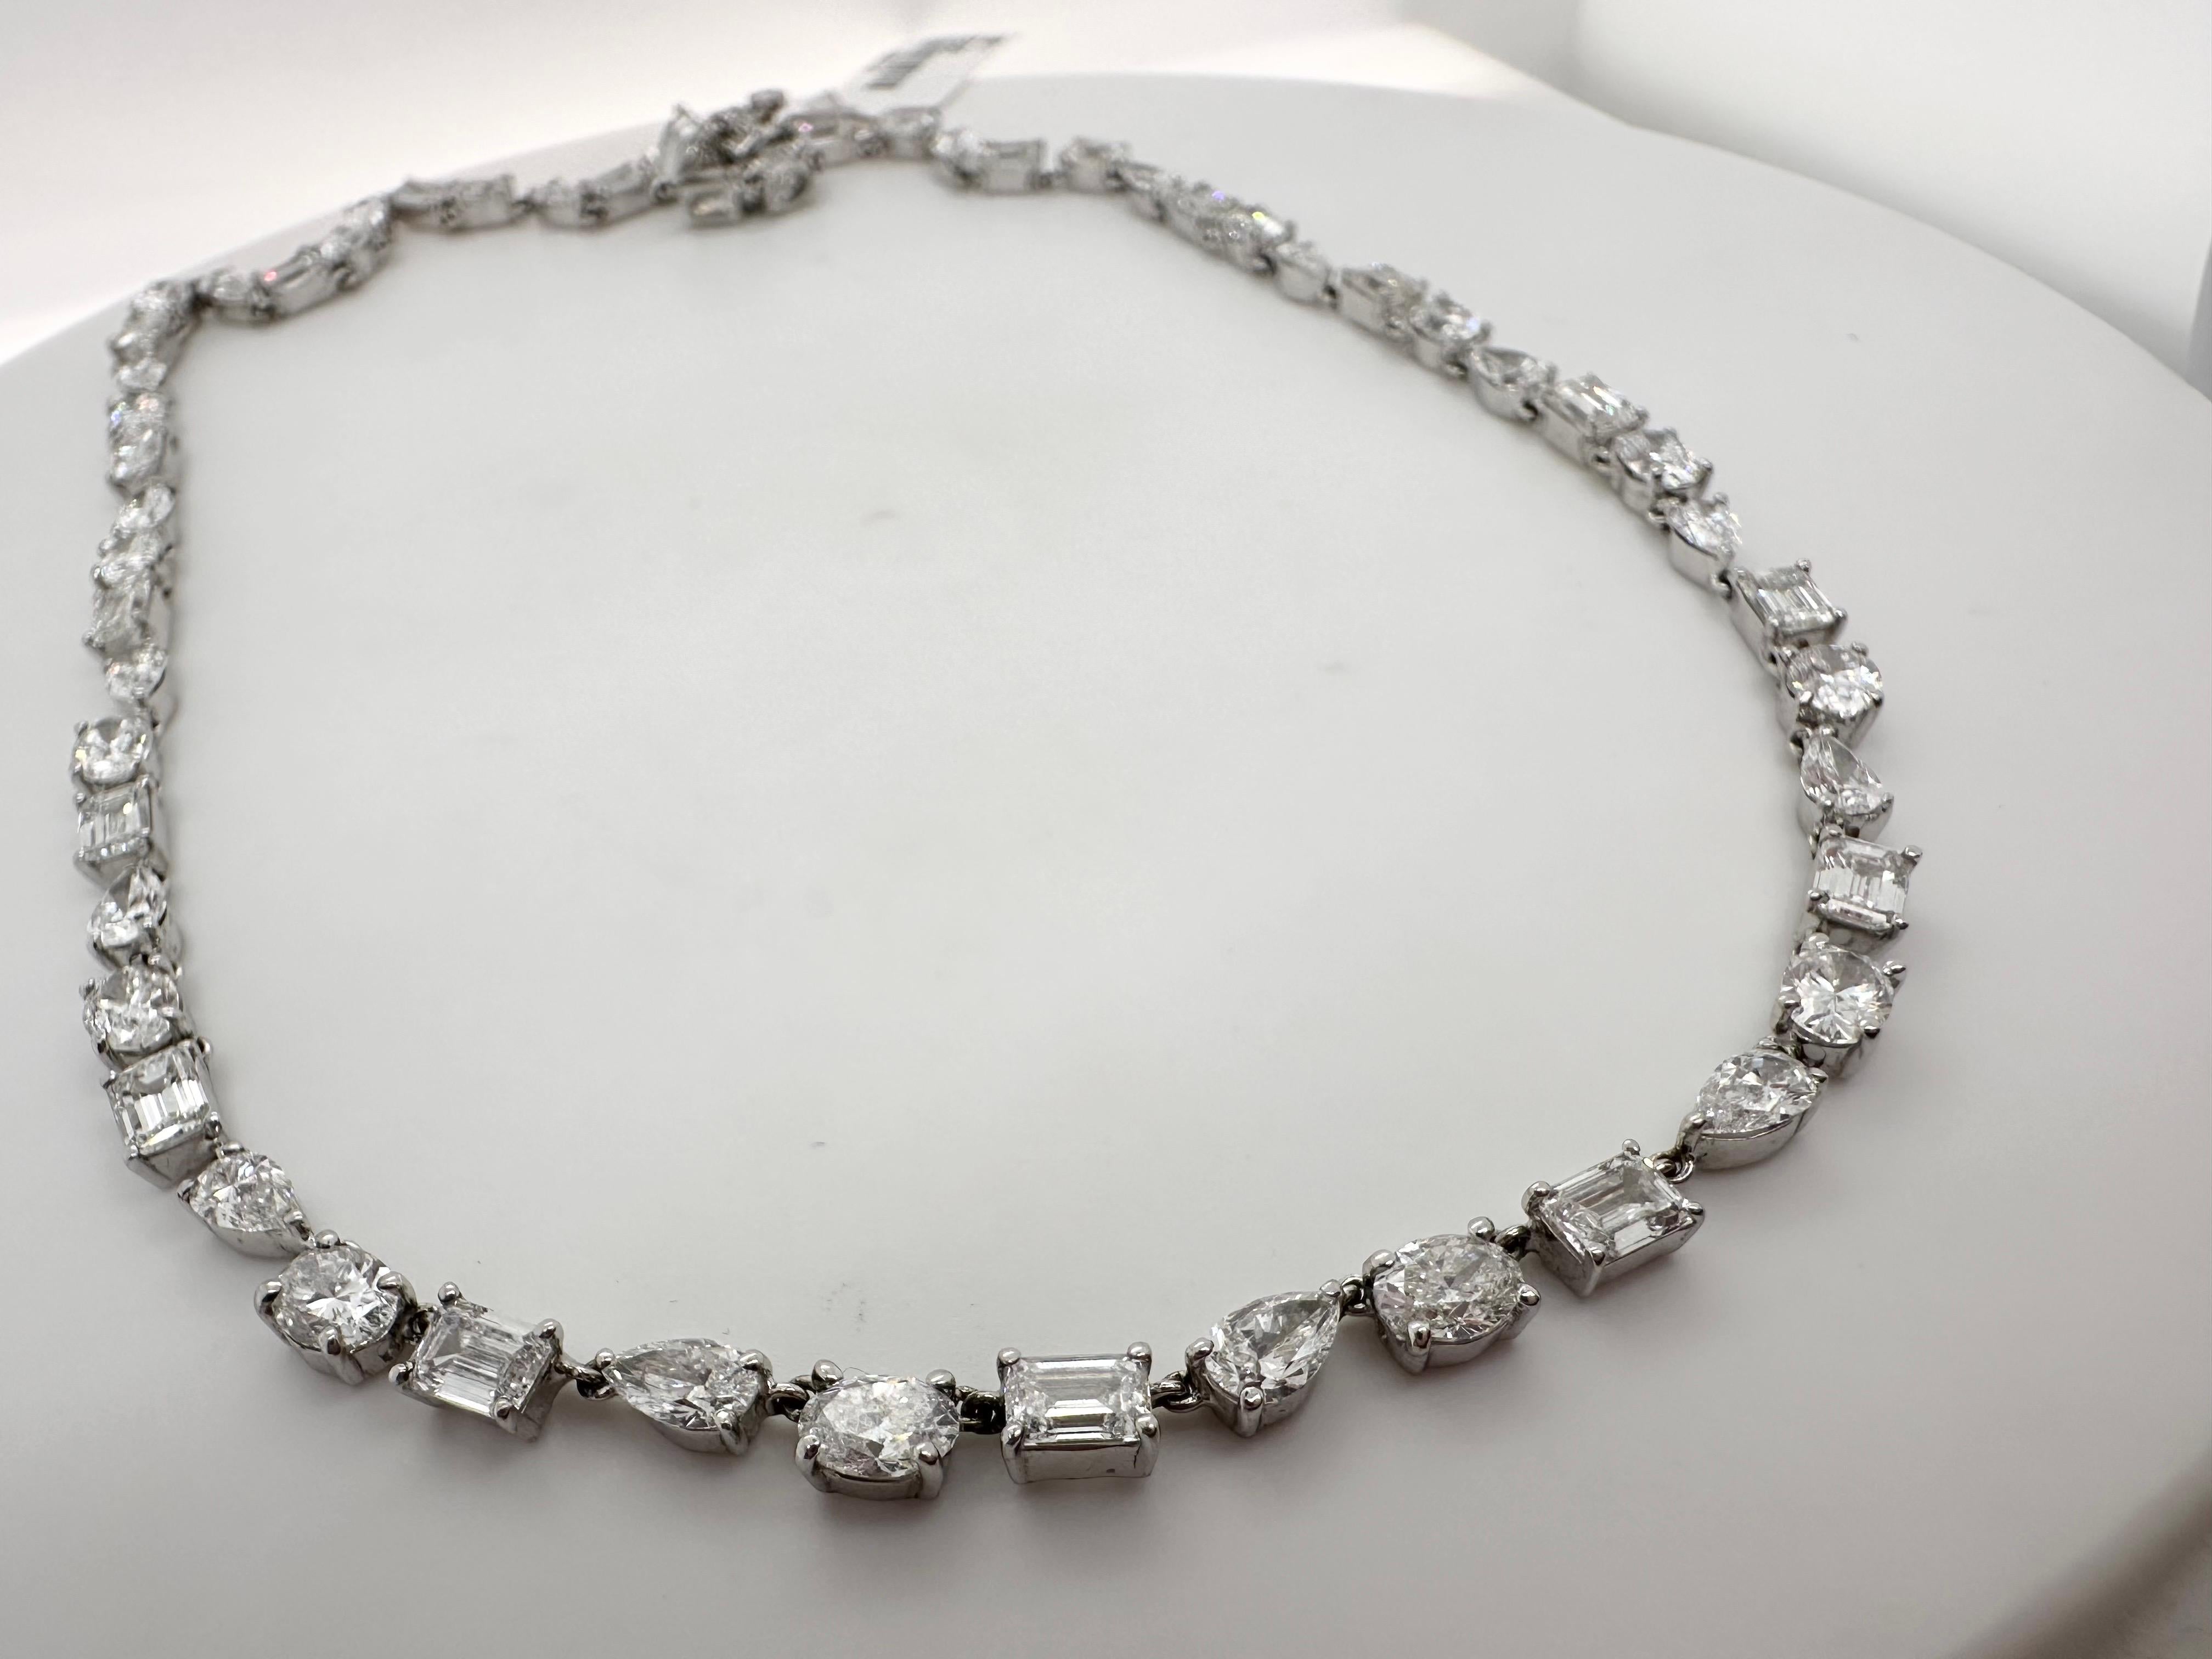 13 Karat atemberaubende Diamant-Halskette von feiner Qualität Diamanten VVS-VS und F Farbe. Diese einzigartige Halskette im Choker-Stil ist 15 Zoll lang und mit Diamanten in verschiedenen Formen versehen, die sich sowohl für einen Abend als auch für